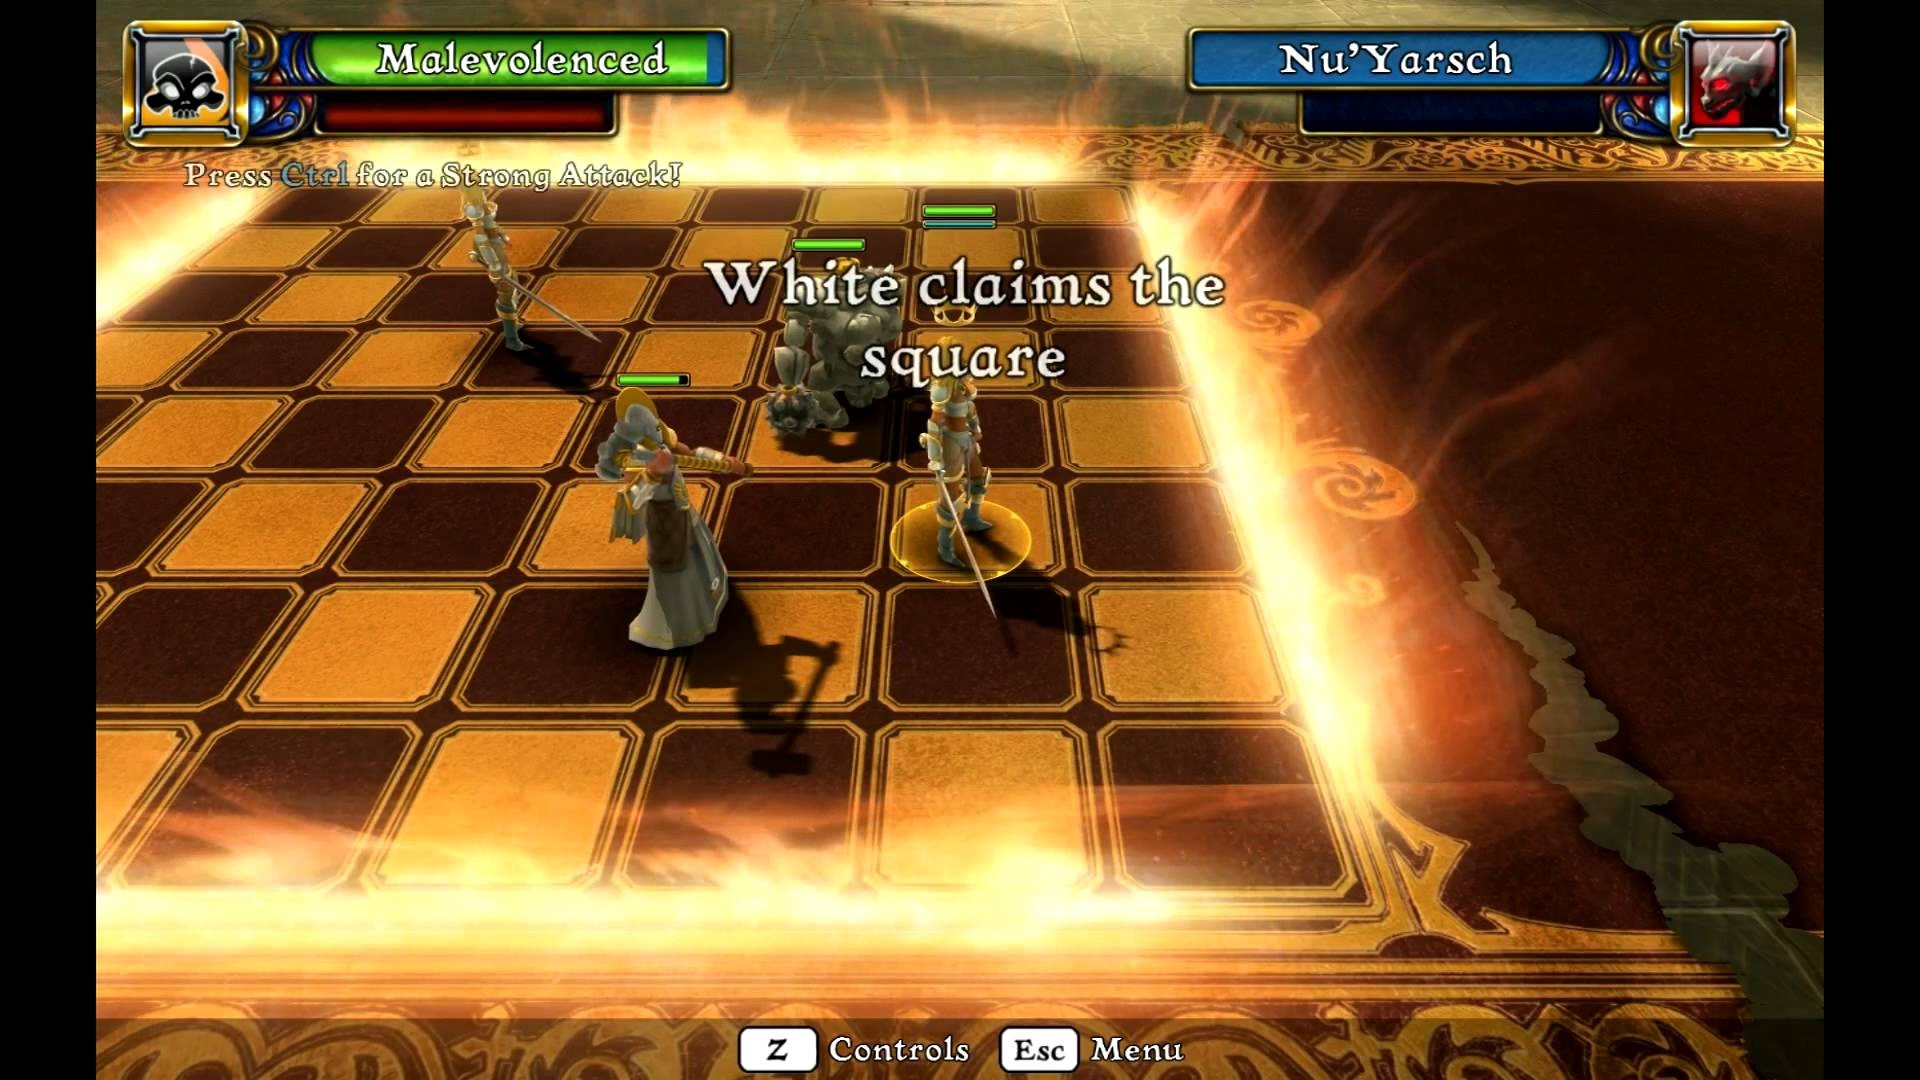 Battle vs Chess Videos for Xbox 360 - GameFAQs